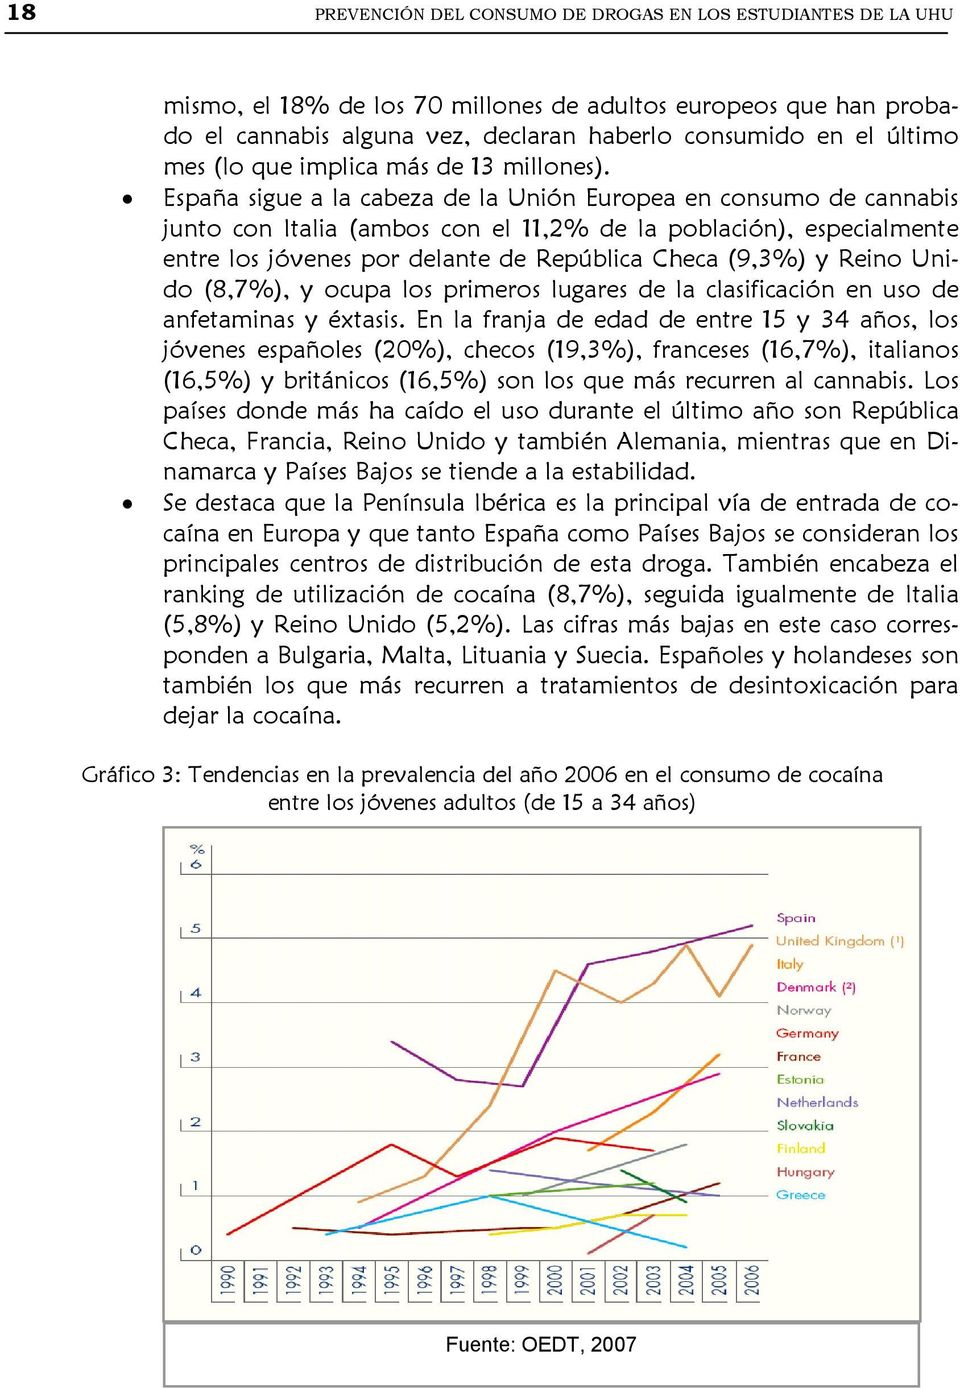 España sigue a la cabeza de la Unión Europea en consumo de cannabis junto con Italia (ambos con el 11,2% de la población), especialmente entre los jóvenes por delante de República Checa (9,3%) y